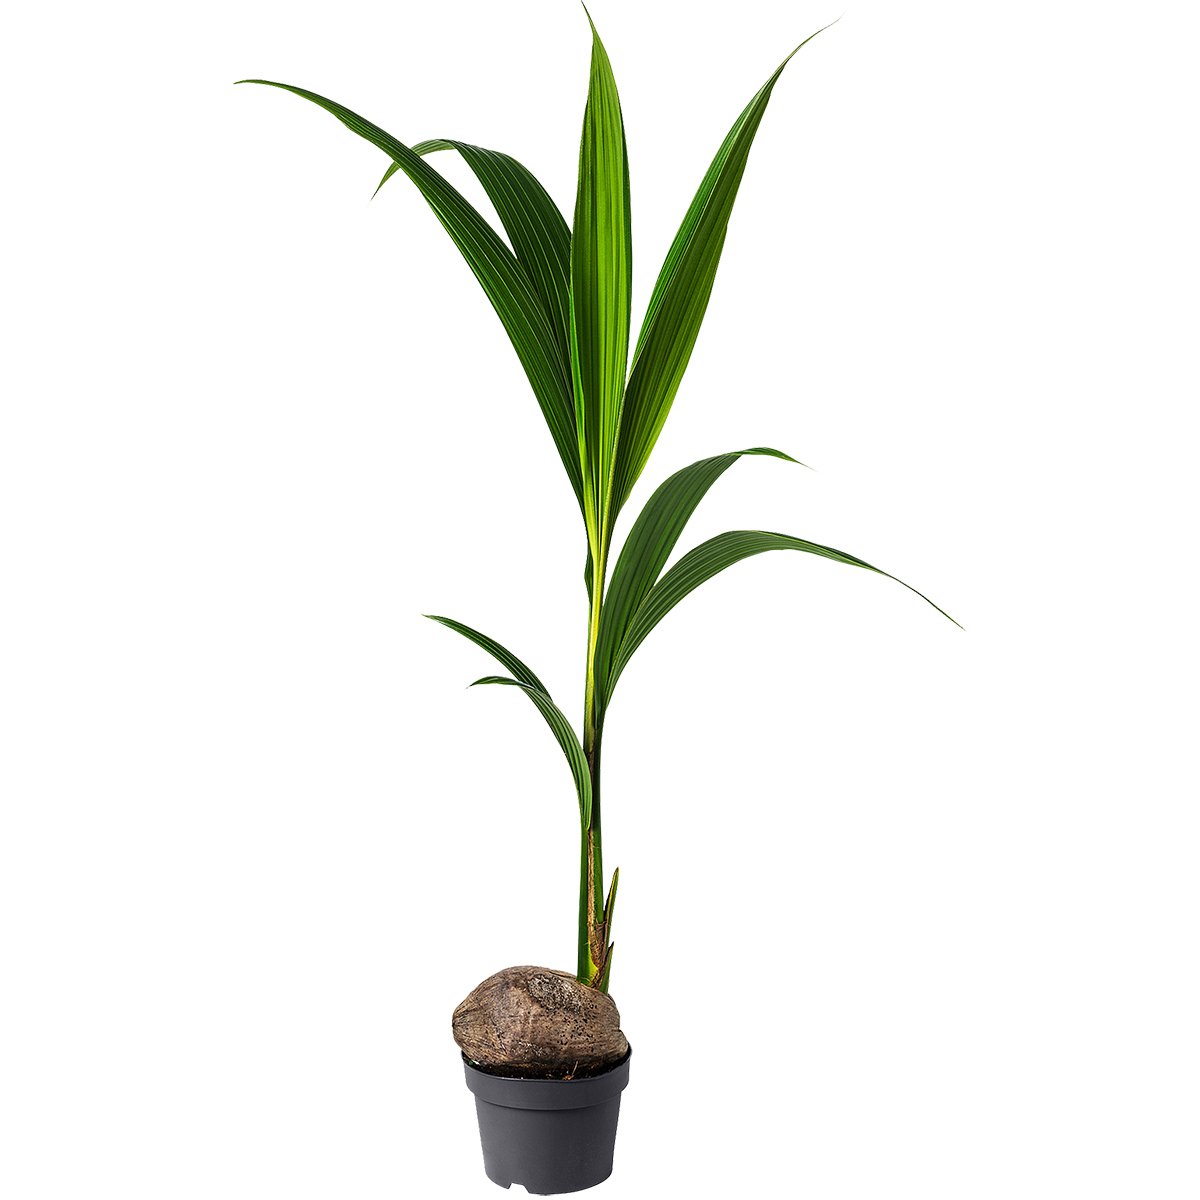 Vazoninis augalas kokosas, Ø 19, 130 cm, lot. COCOS